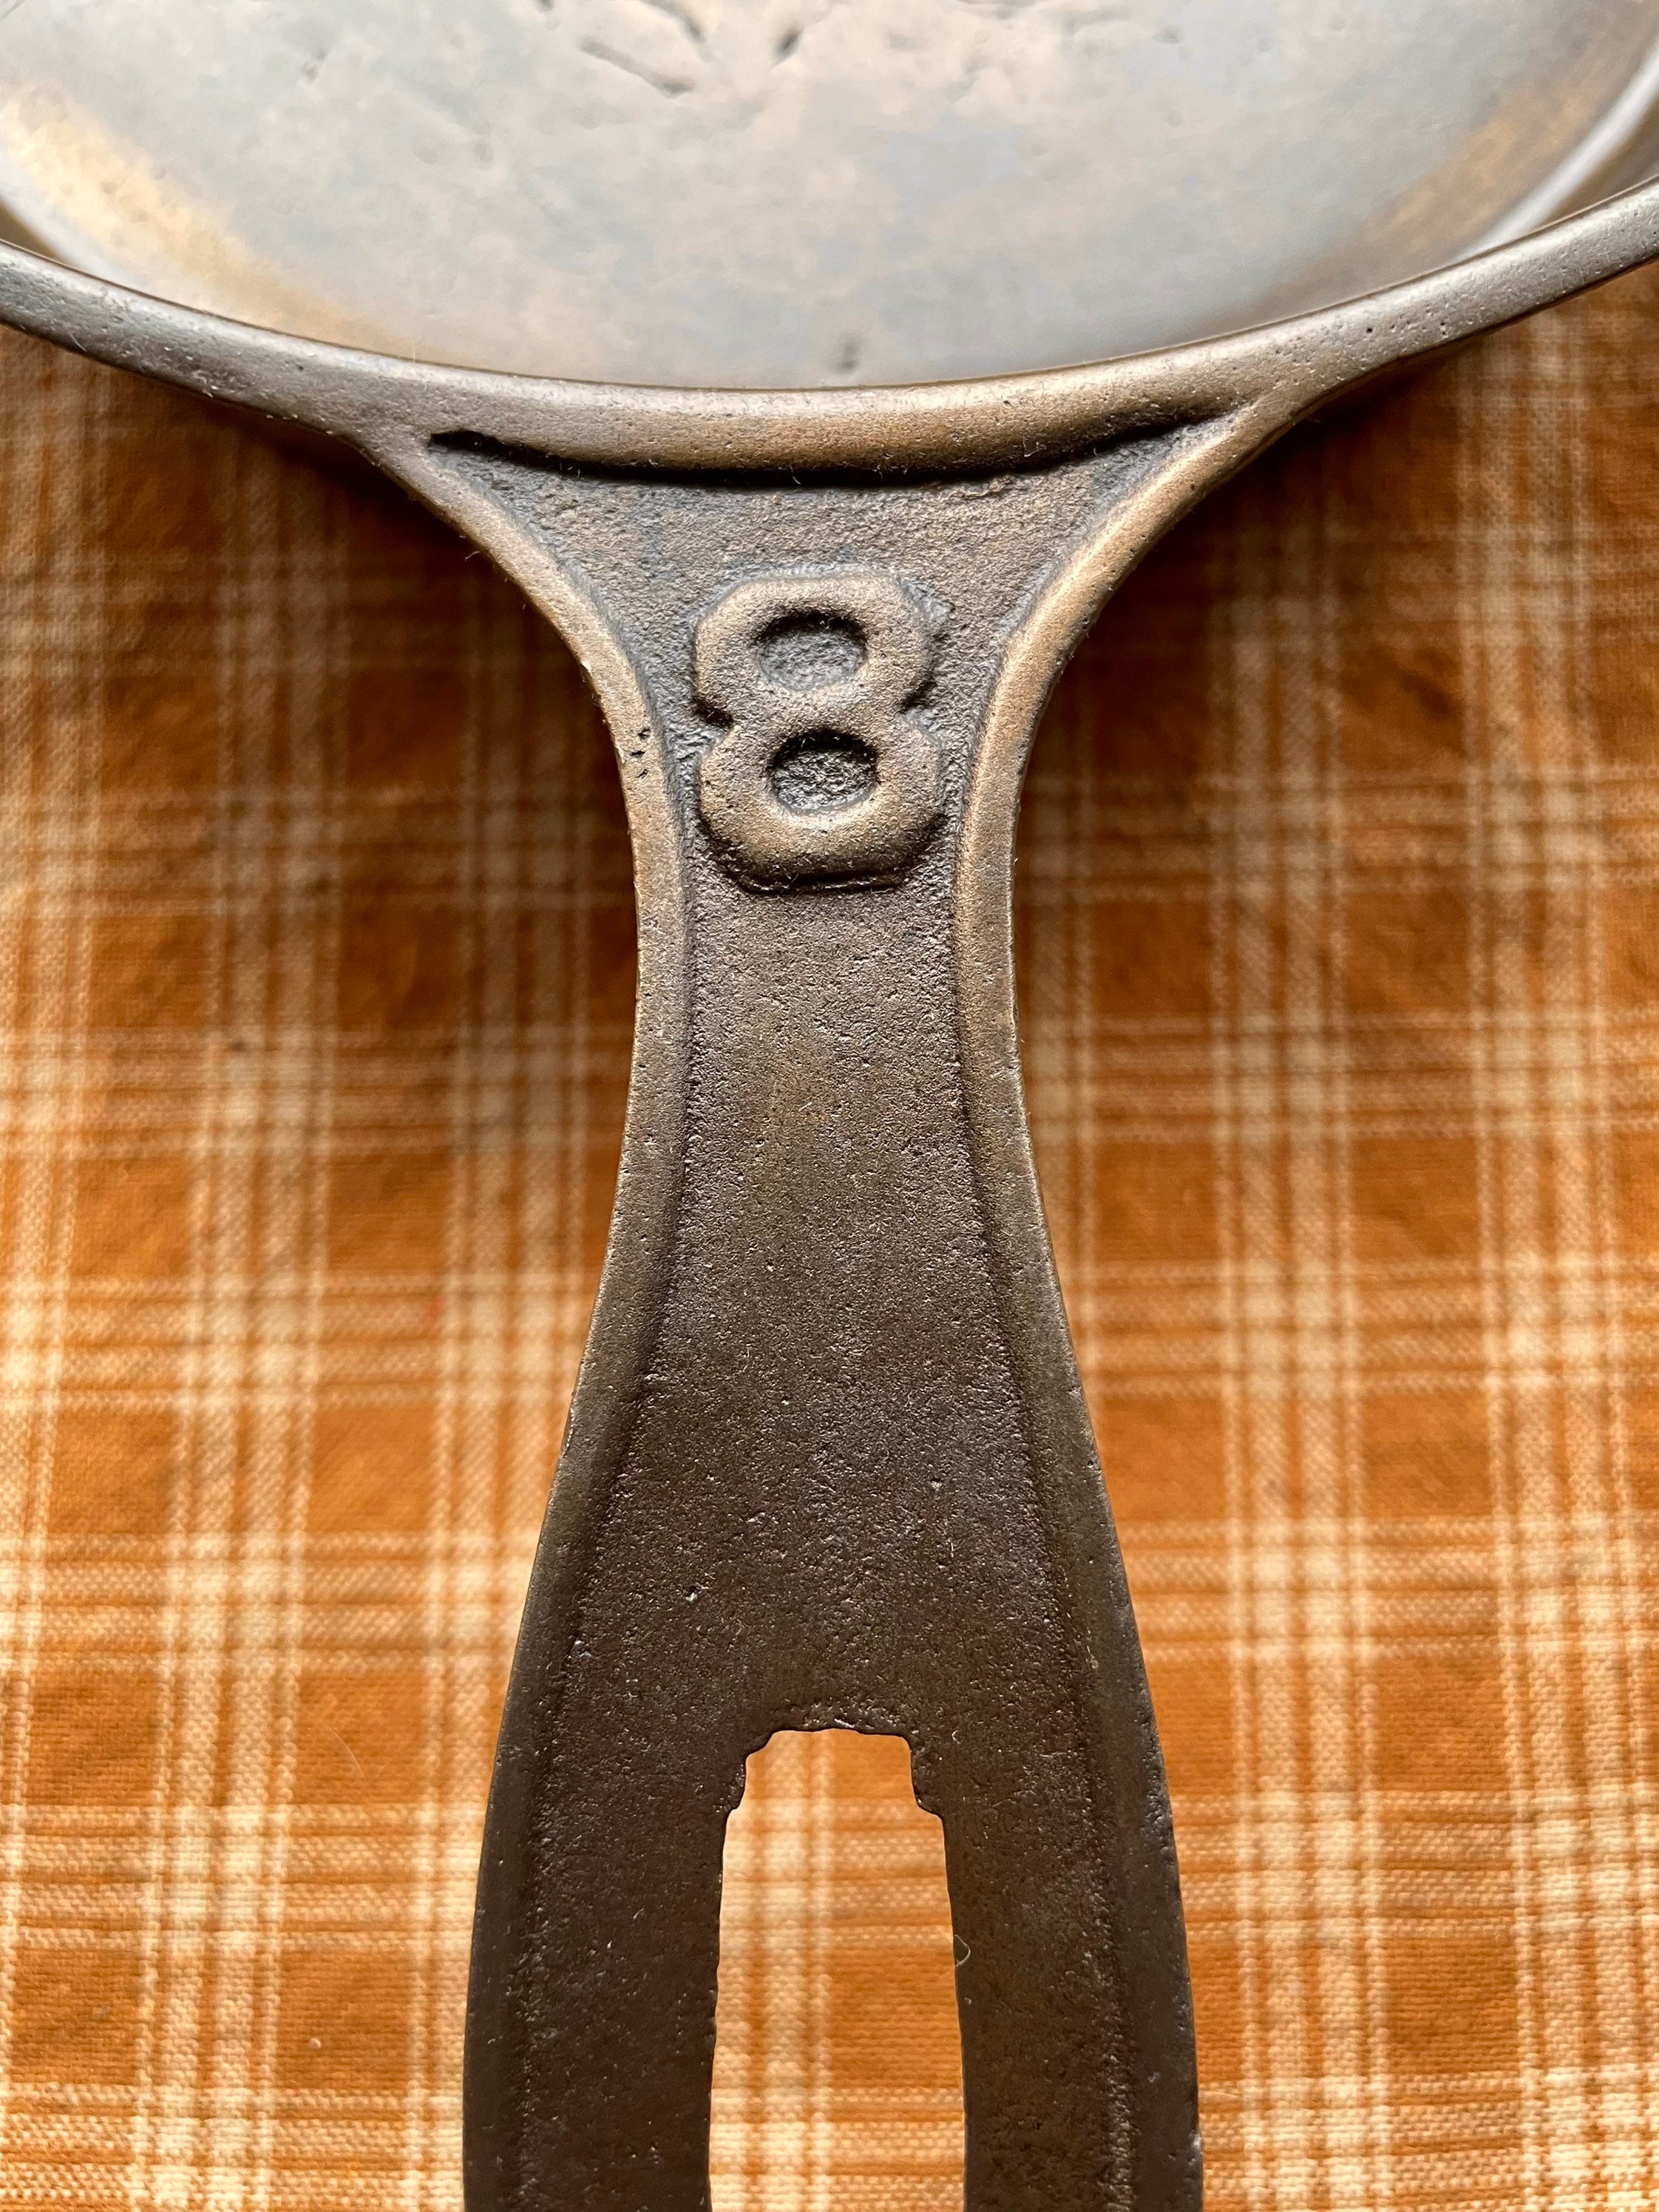 Rare 1800s fancy Handle 8 Single Spout Cast Iron Skillet 